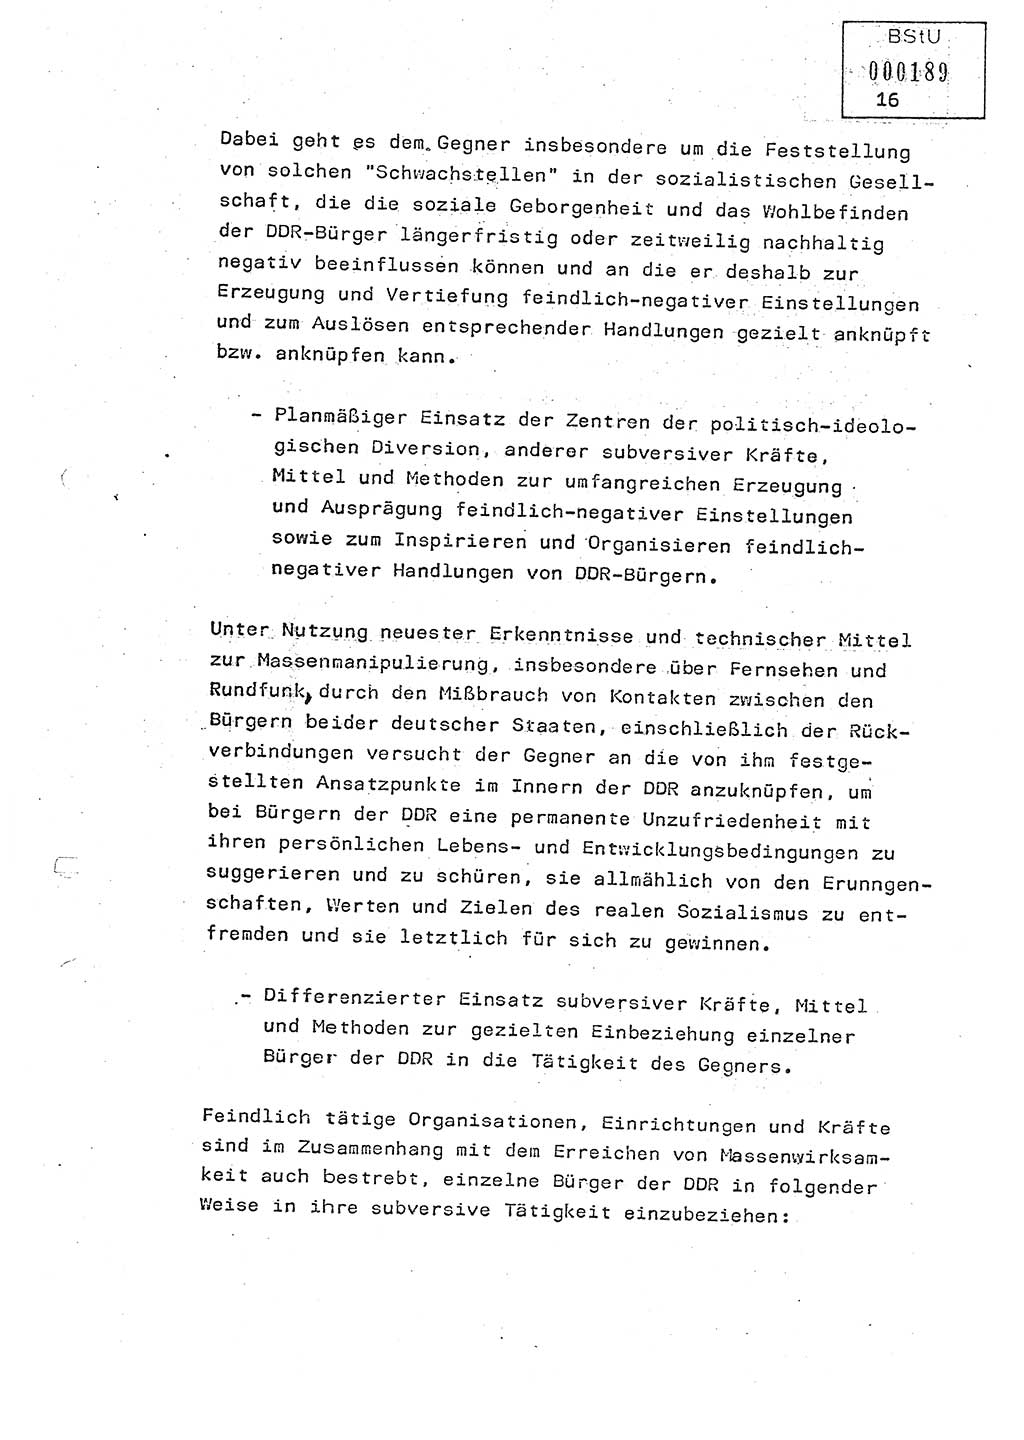 Studienmaterial Ministerium für Staatssicherheit (MfS) [Deutsche Demokratische Republik (DDR)], Hauptabteilung (HA) Ⅸ/ Auswertungs- und Kontrollgruppe (AKG), Berlin ca. 1986, Seite 16 (Stud.-Mat. MfS DDR HA Ⅸ/AKG 1986, S. 16)